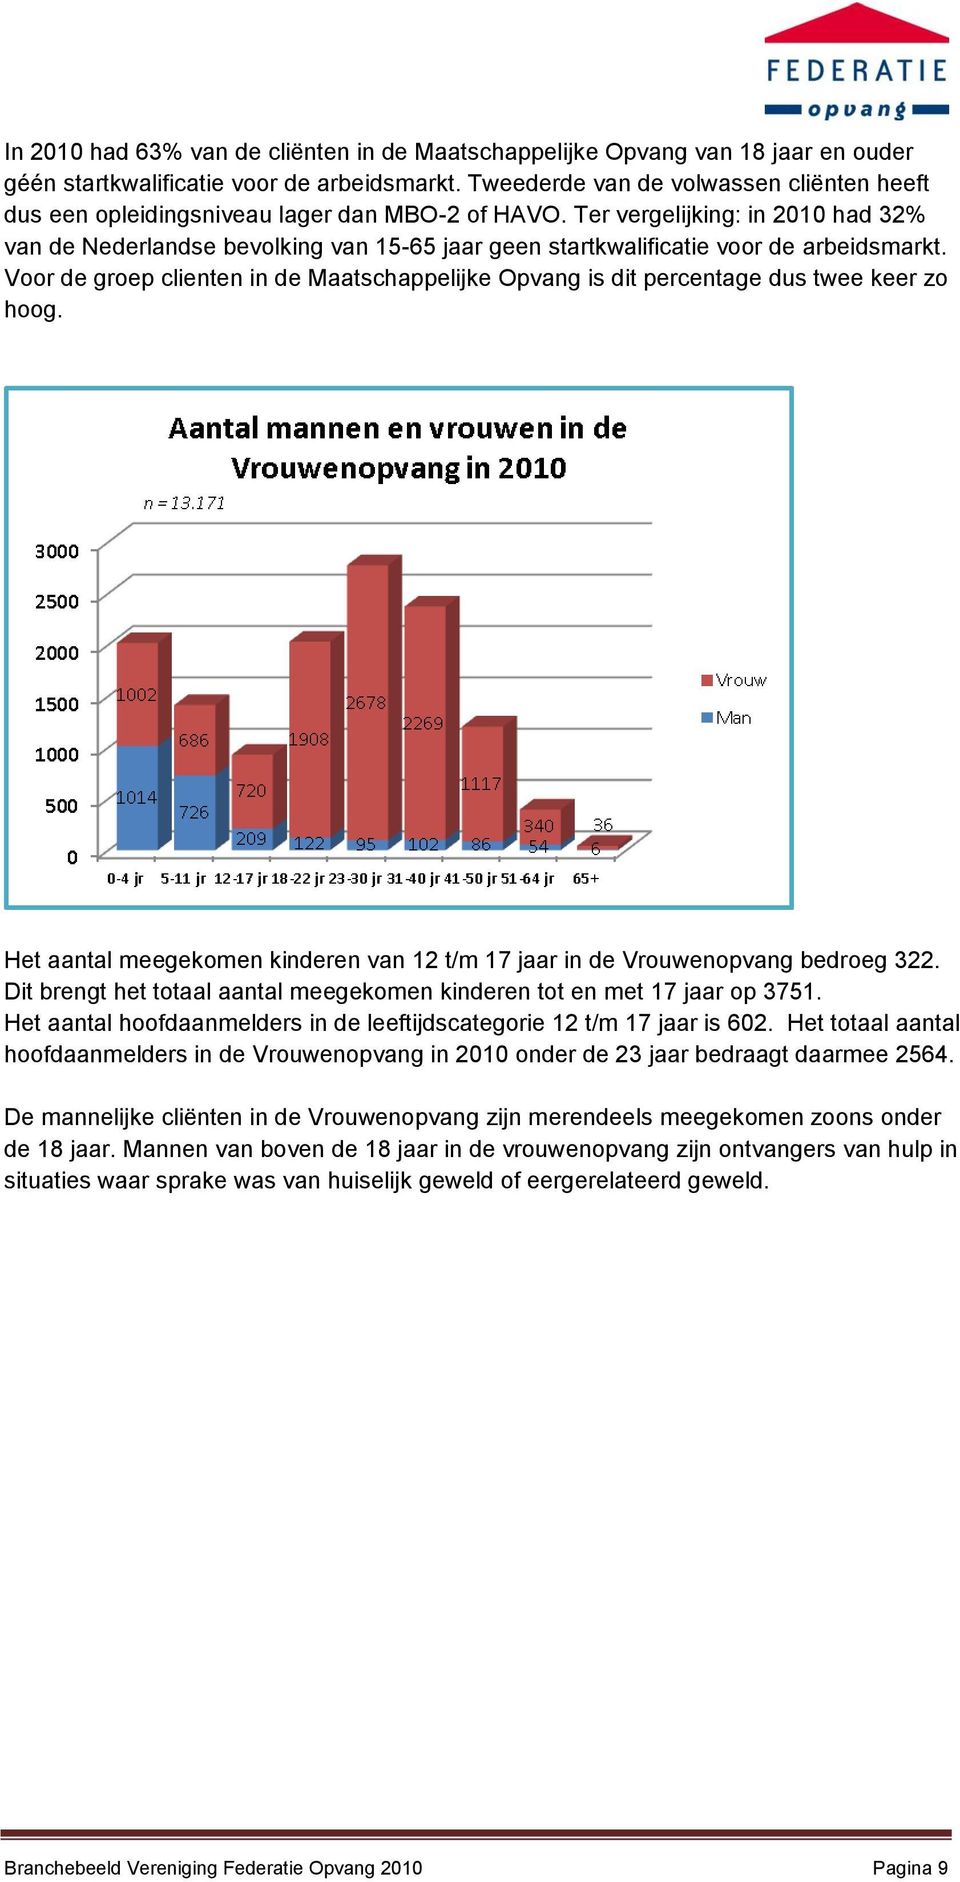 Ter vergelijking: in 2010 had 32% van de Nederlandse bevolking van 15-65 jaar geen startkwalificatie voor de arbeidsmarkt.